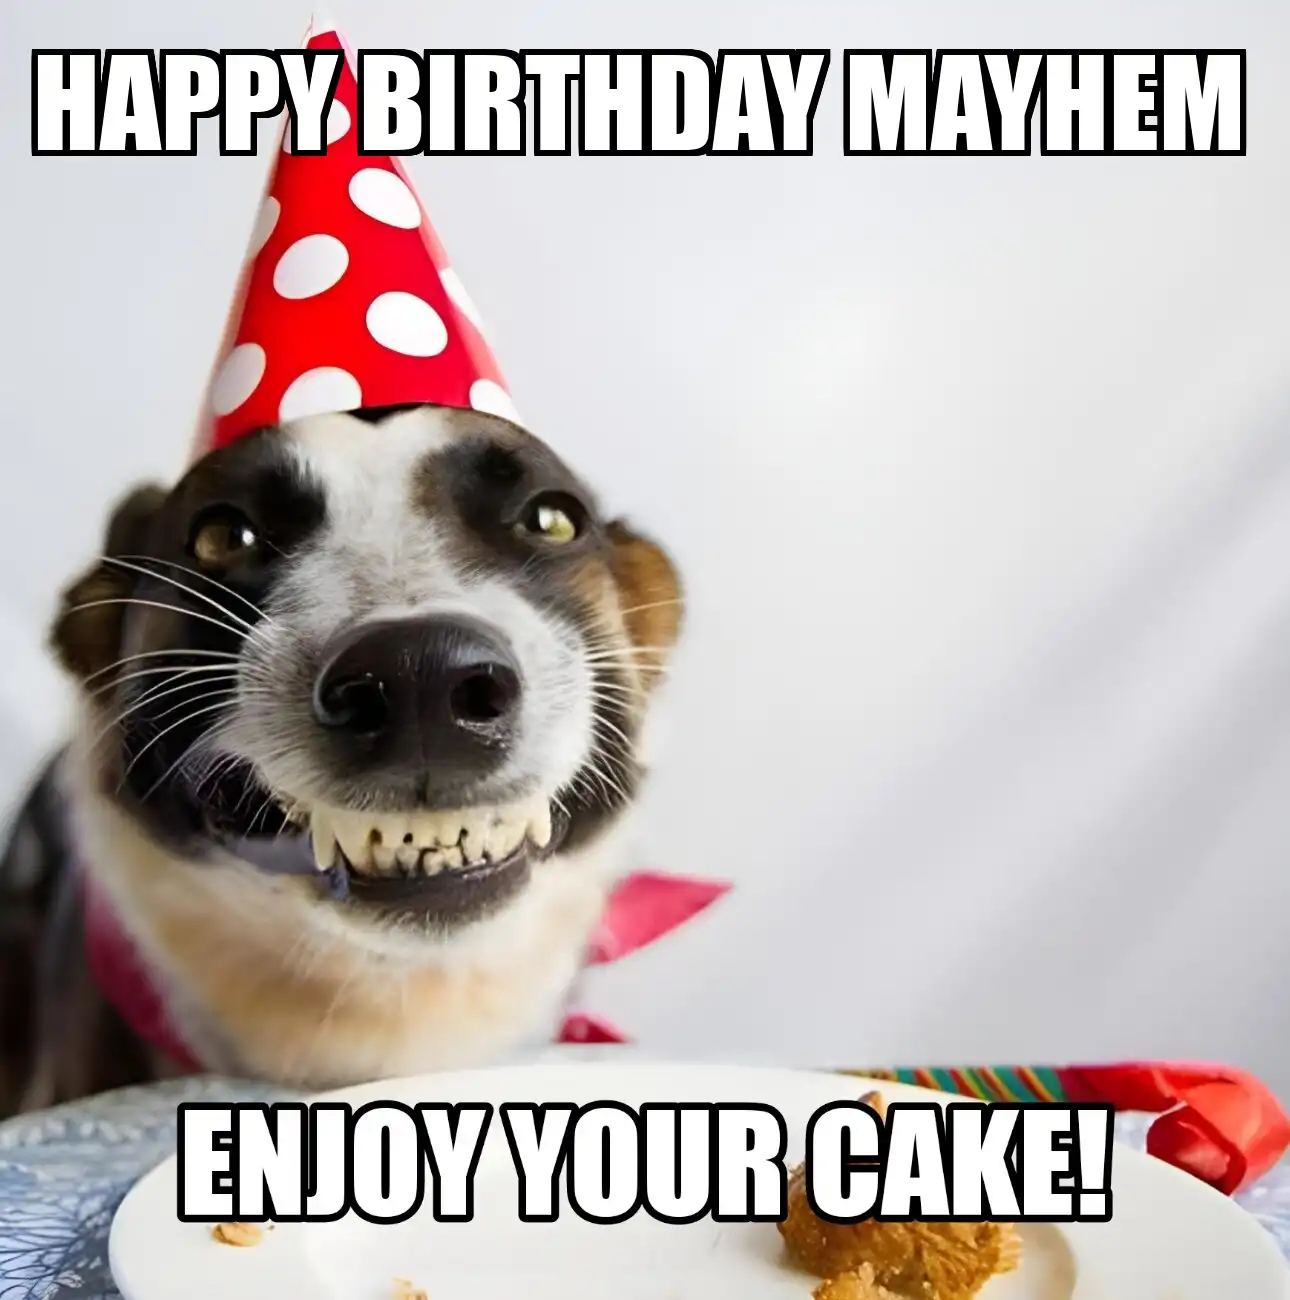 Happy Birthday Mayhem Enjoy Your Cake Dog Meme